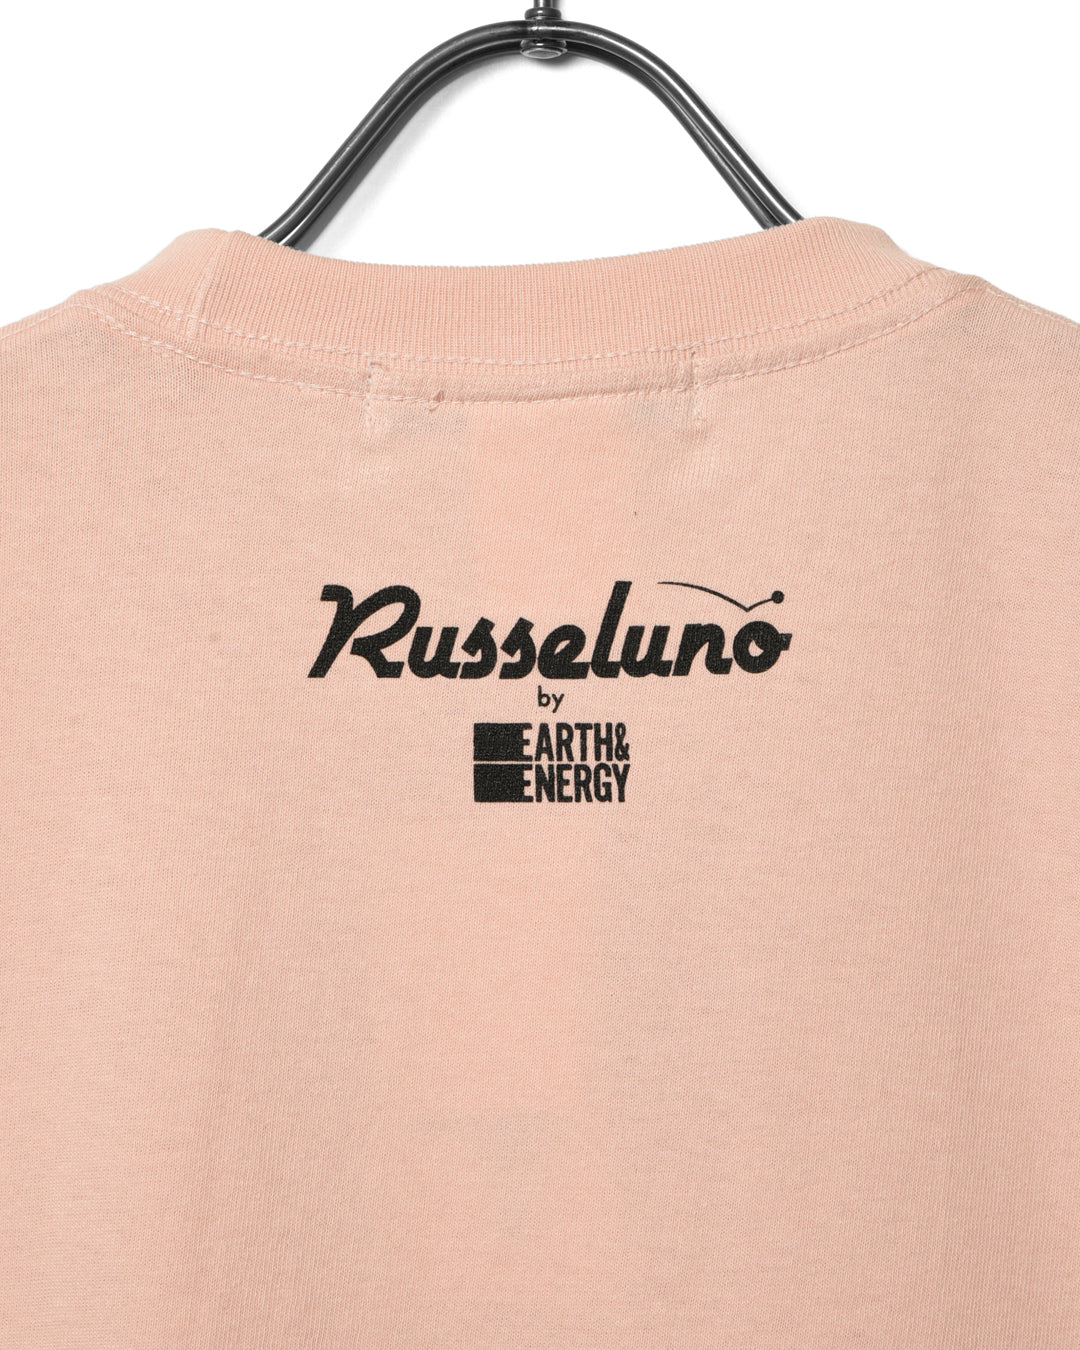 E & E-Ki Nishimoto 티셔츠의 Russeluno